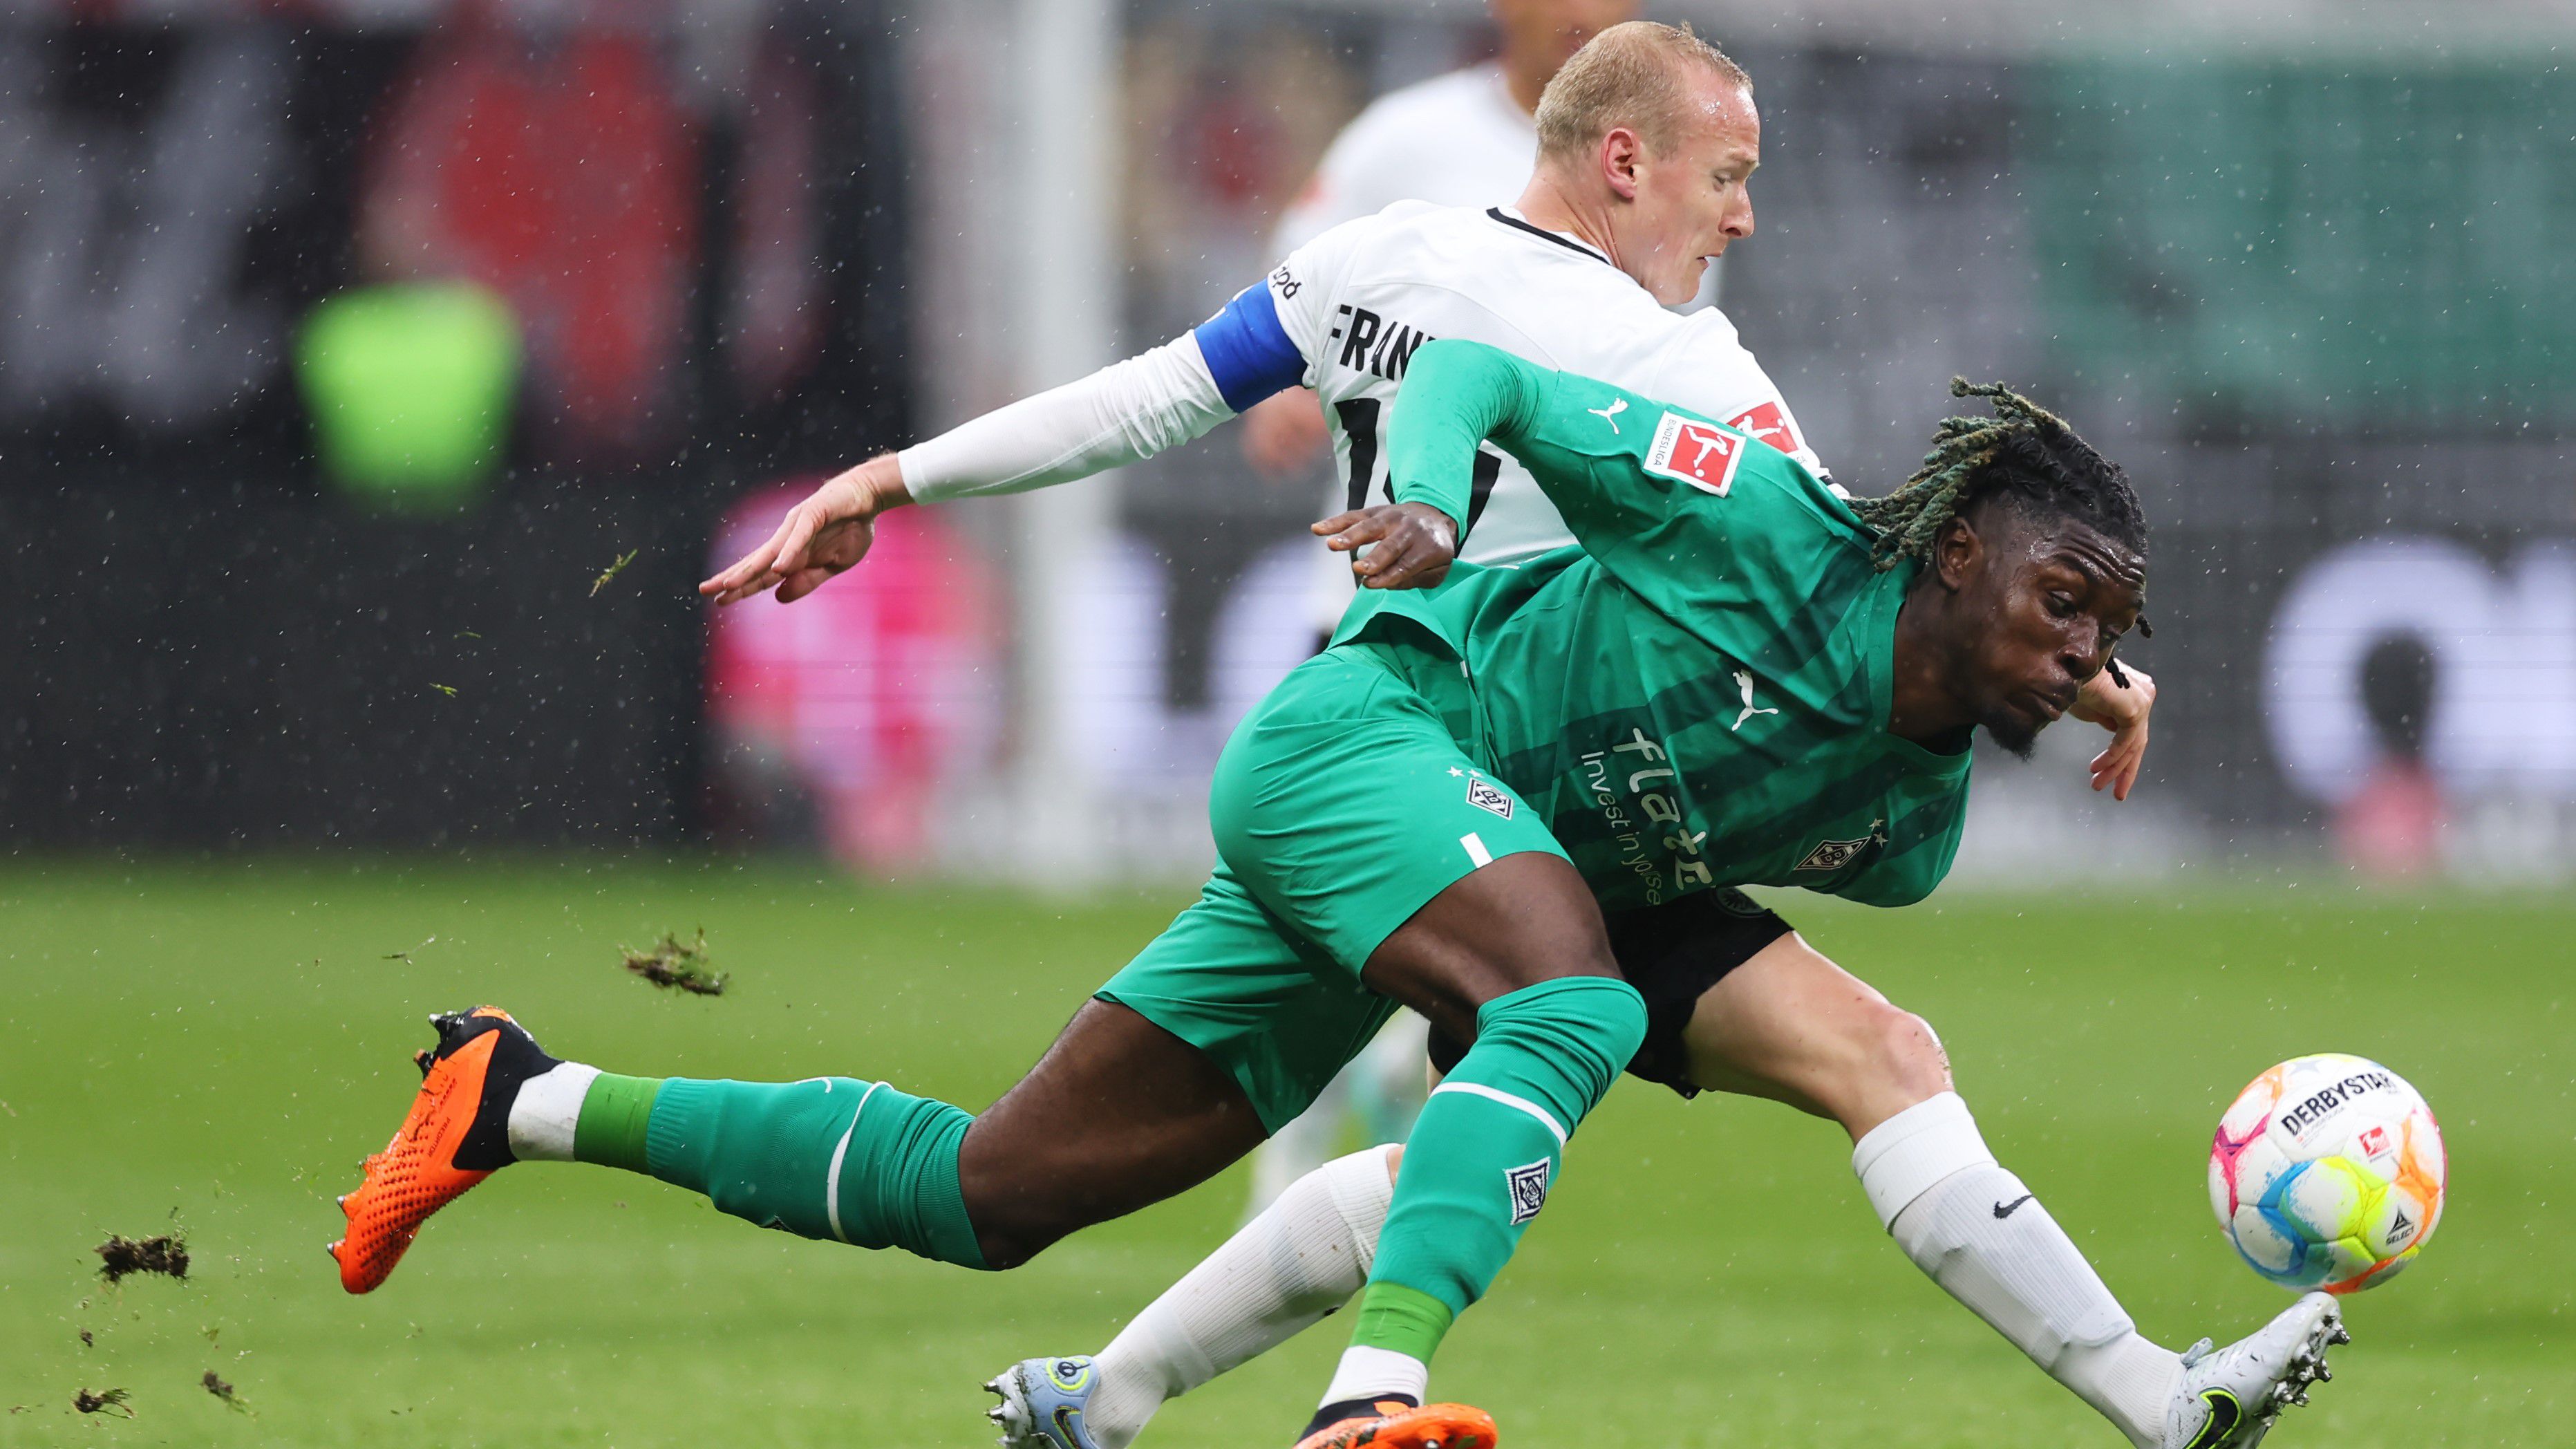 Kiélezett meccset hozott a Frankfurt és a Mönchengladbach csatája, a csapatok végül megosztoztak a pontokon.